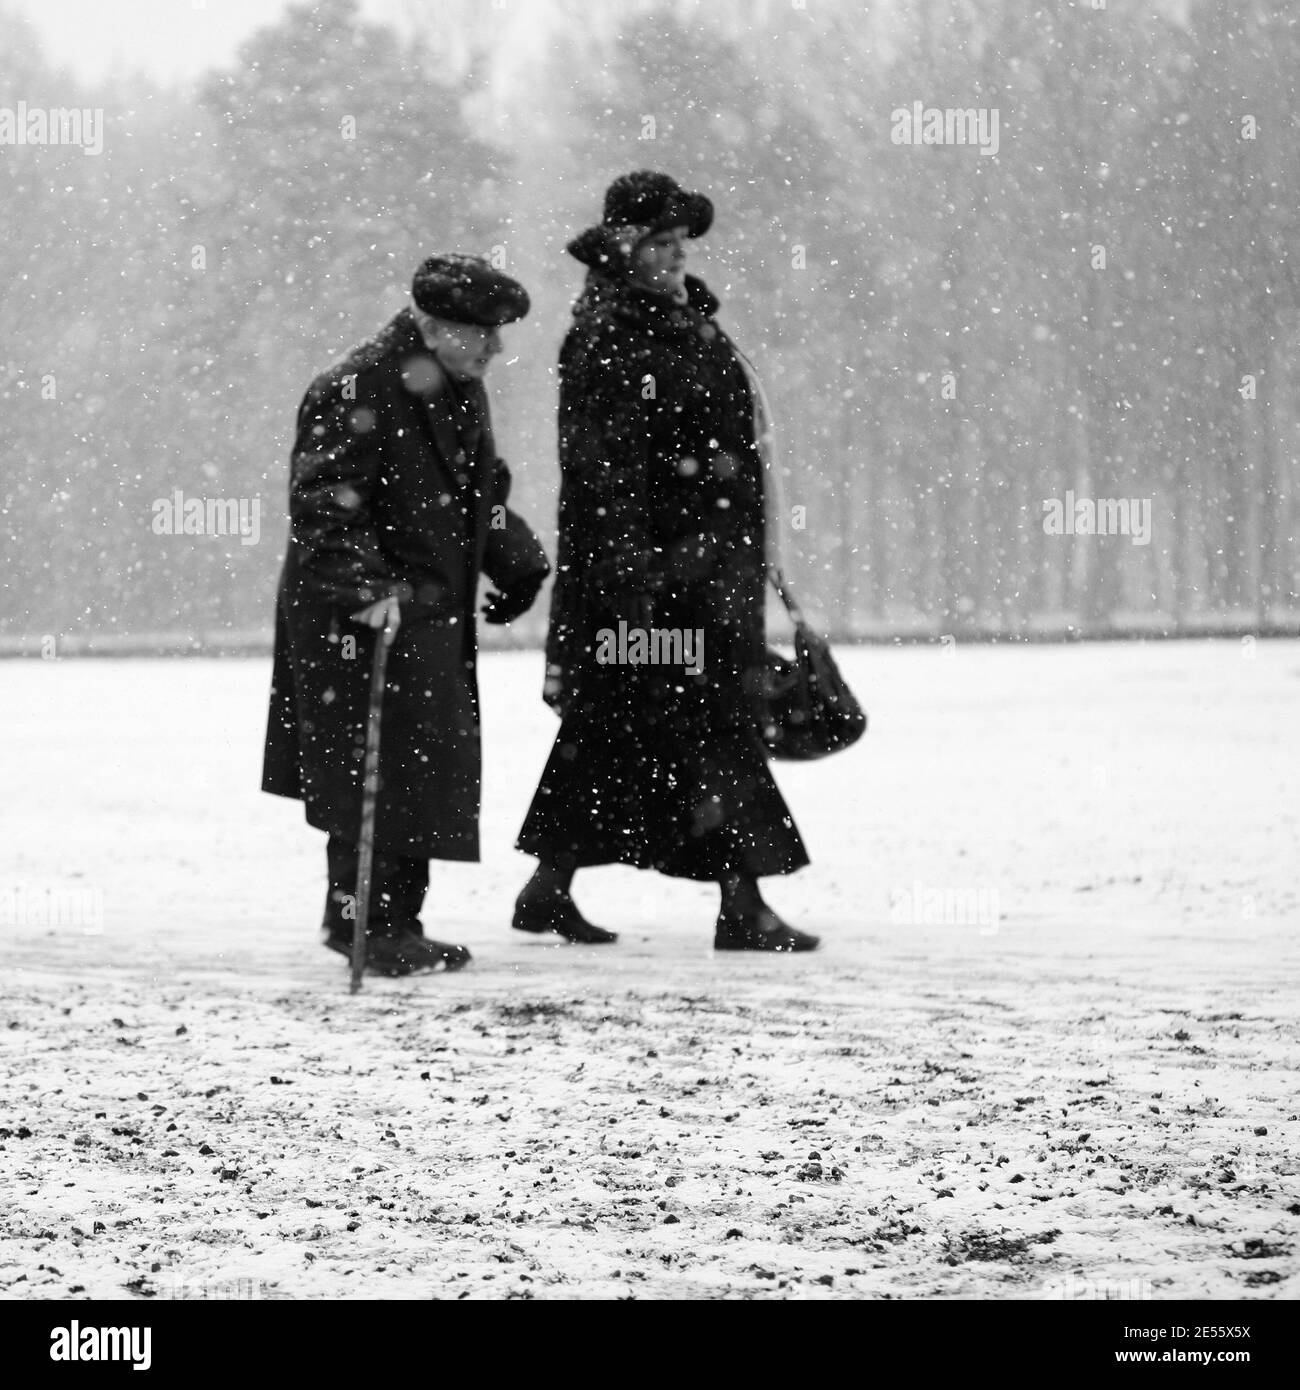 Oswiecim, Polen - 27. Januar 2008: 73. Jahrestag der Befreiung von Auschwitz-Birkenau. Der Überlebende besucht das Vernichtungslager Auschwitz. Stockfoto